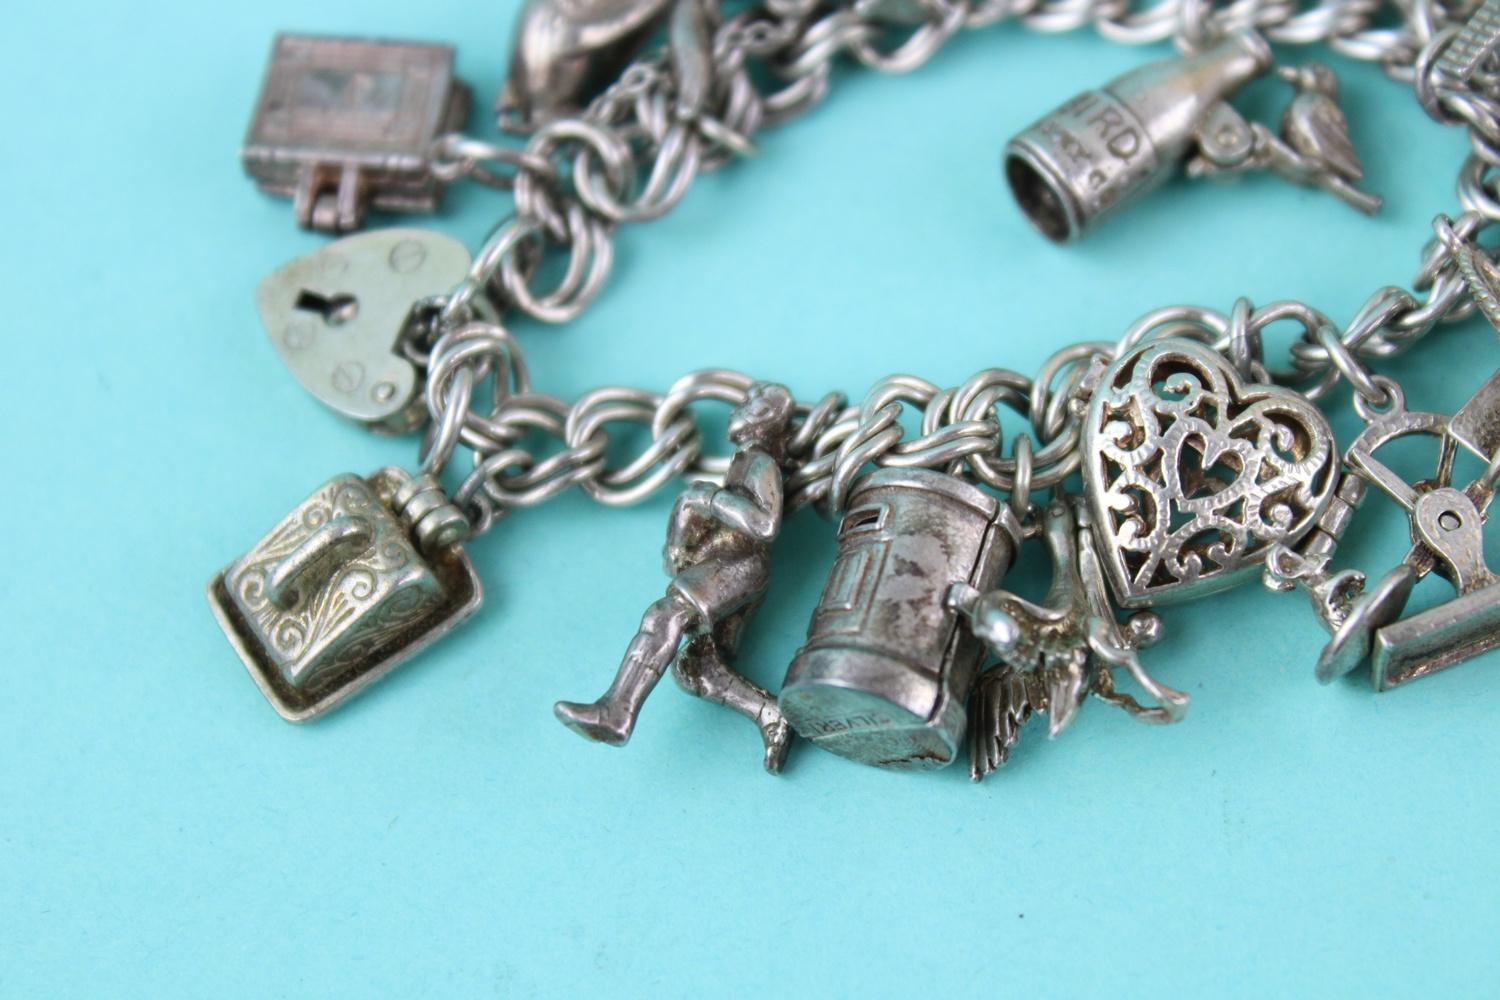 Vintage heart padlock loaded sterling silver charm bracelet (72g) - Image 2 of 3